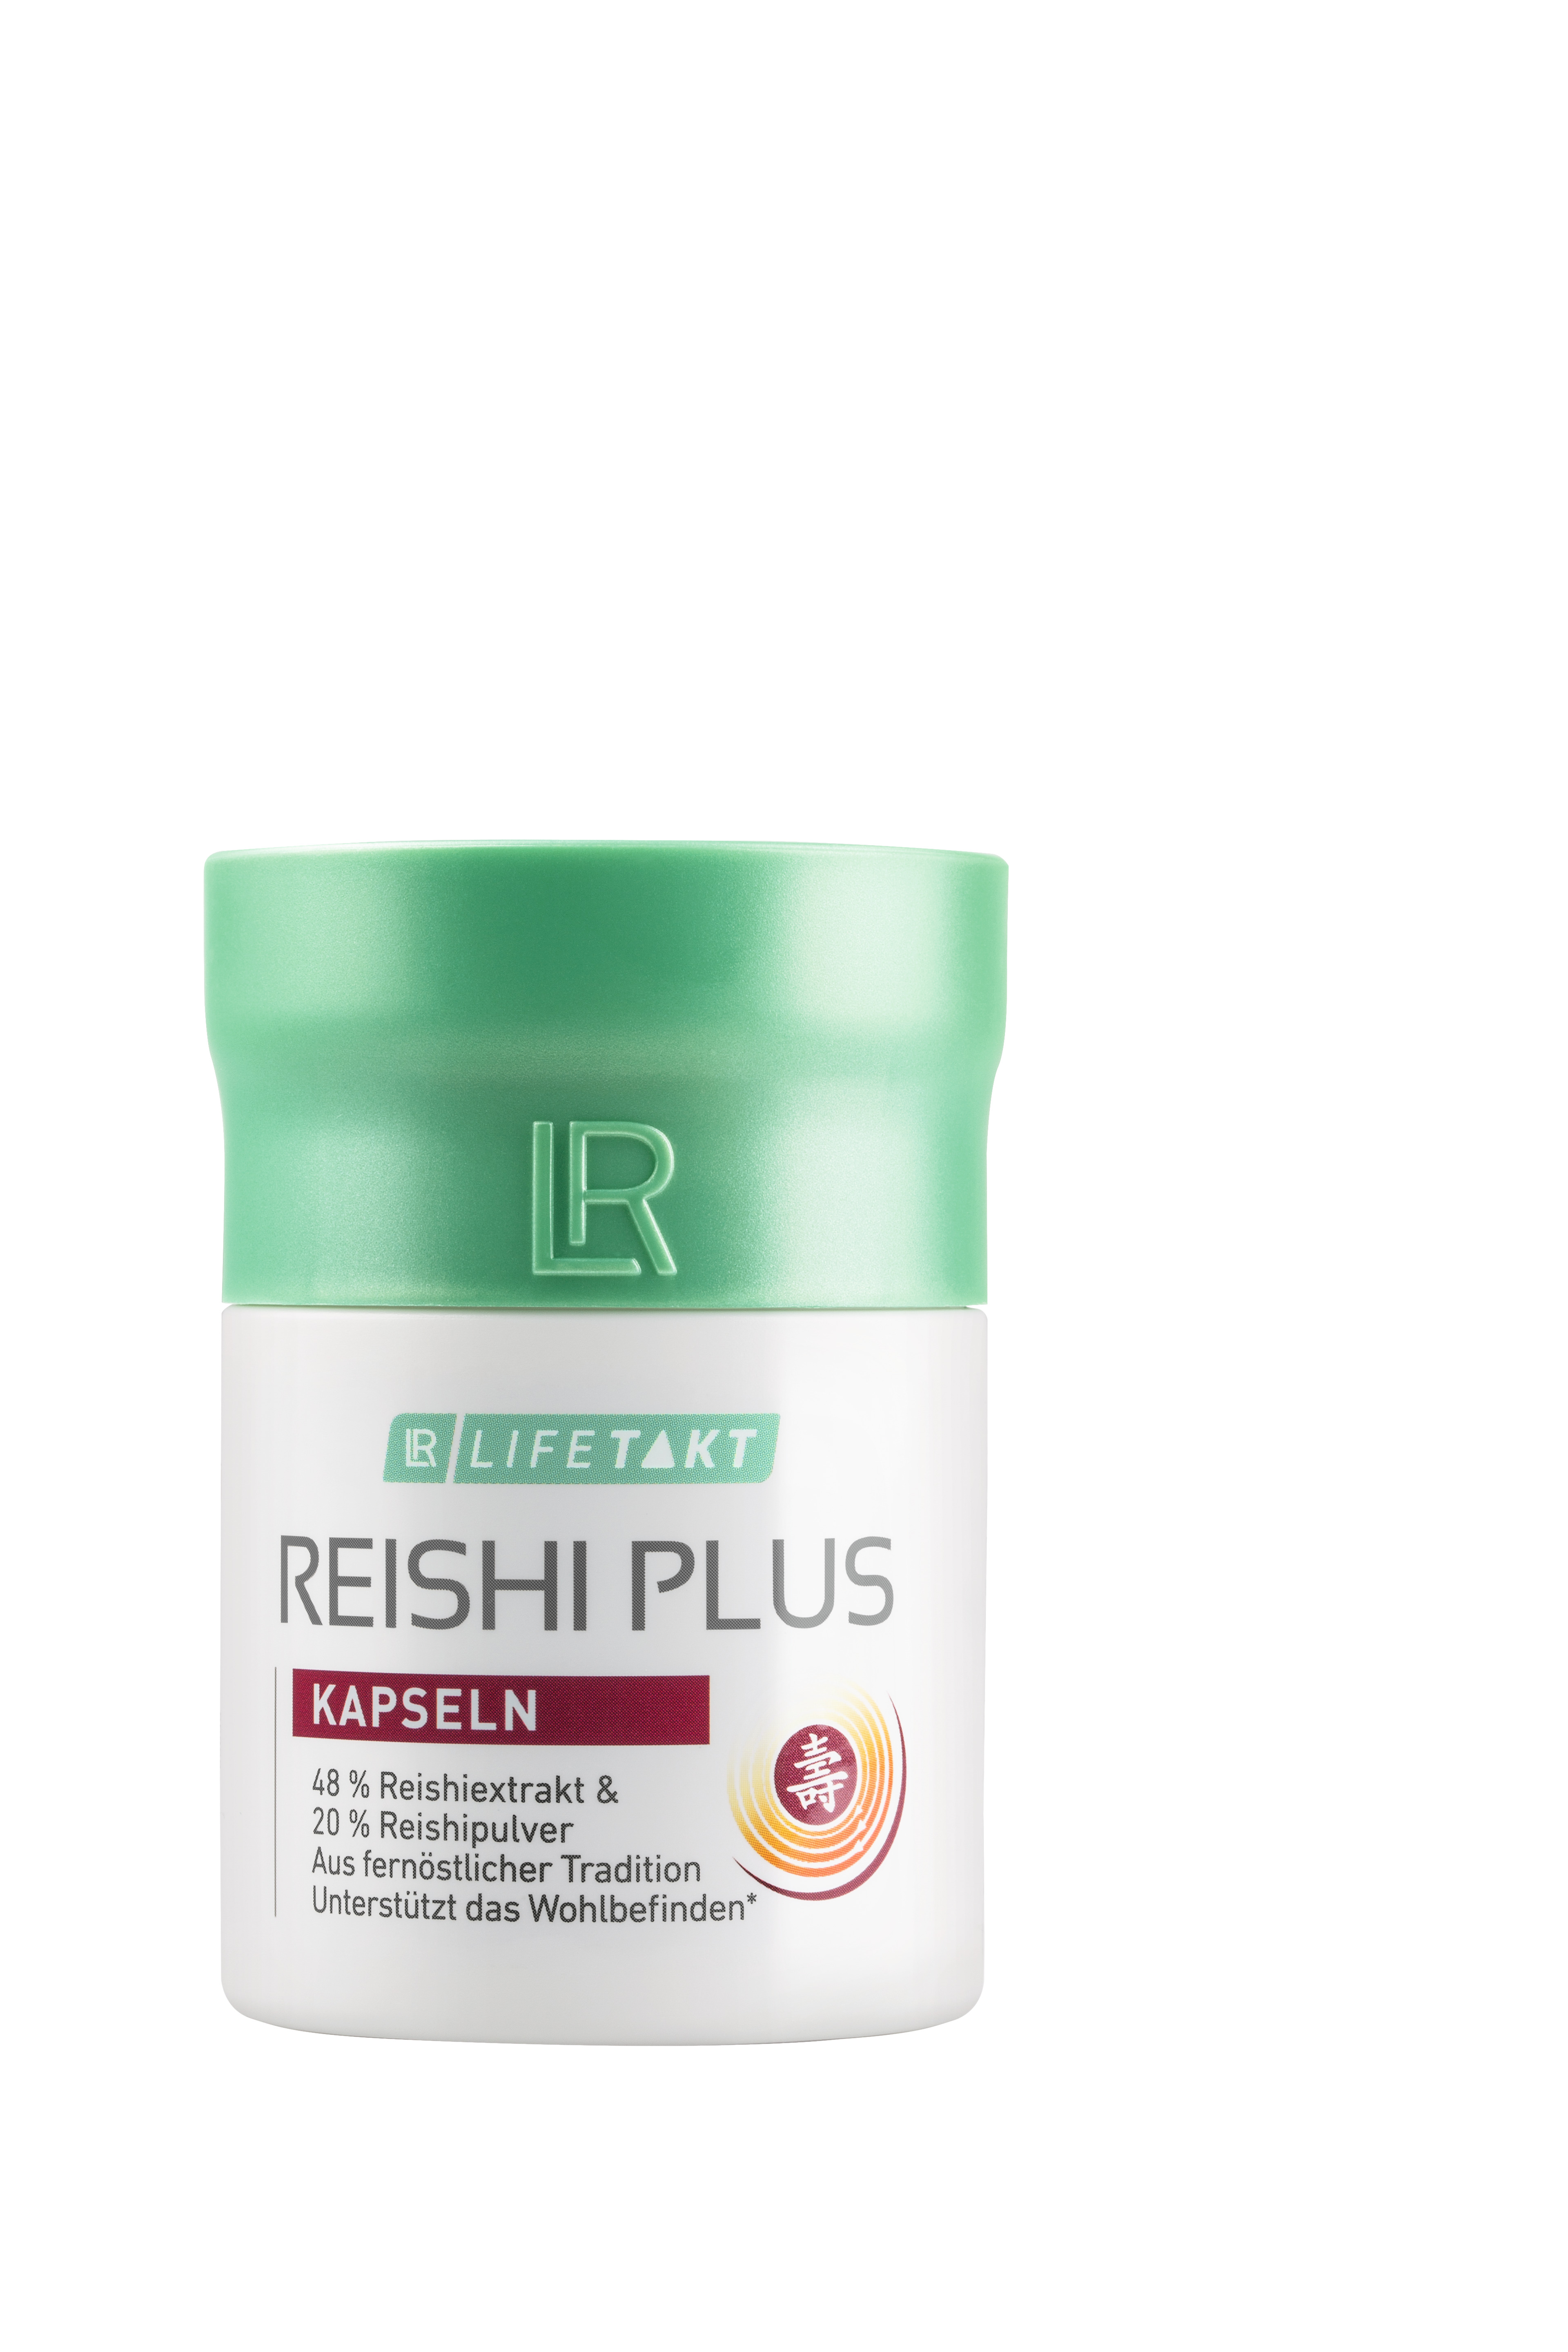 Reishi Plus capsules